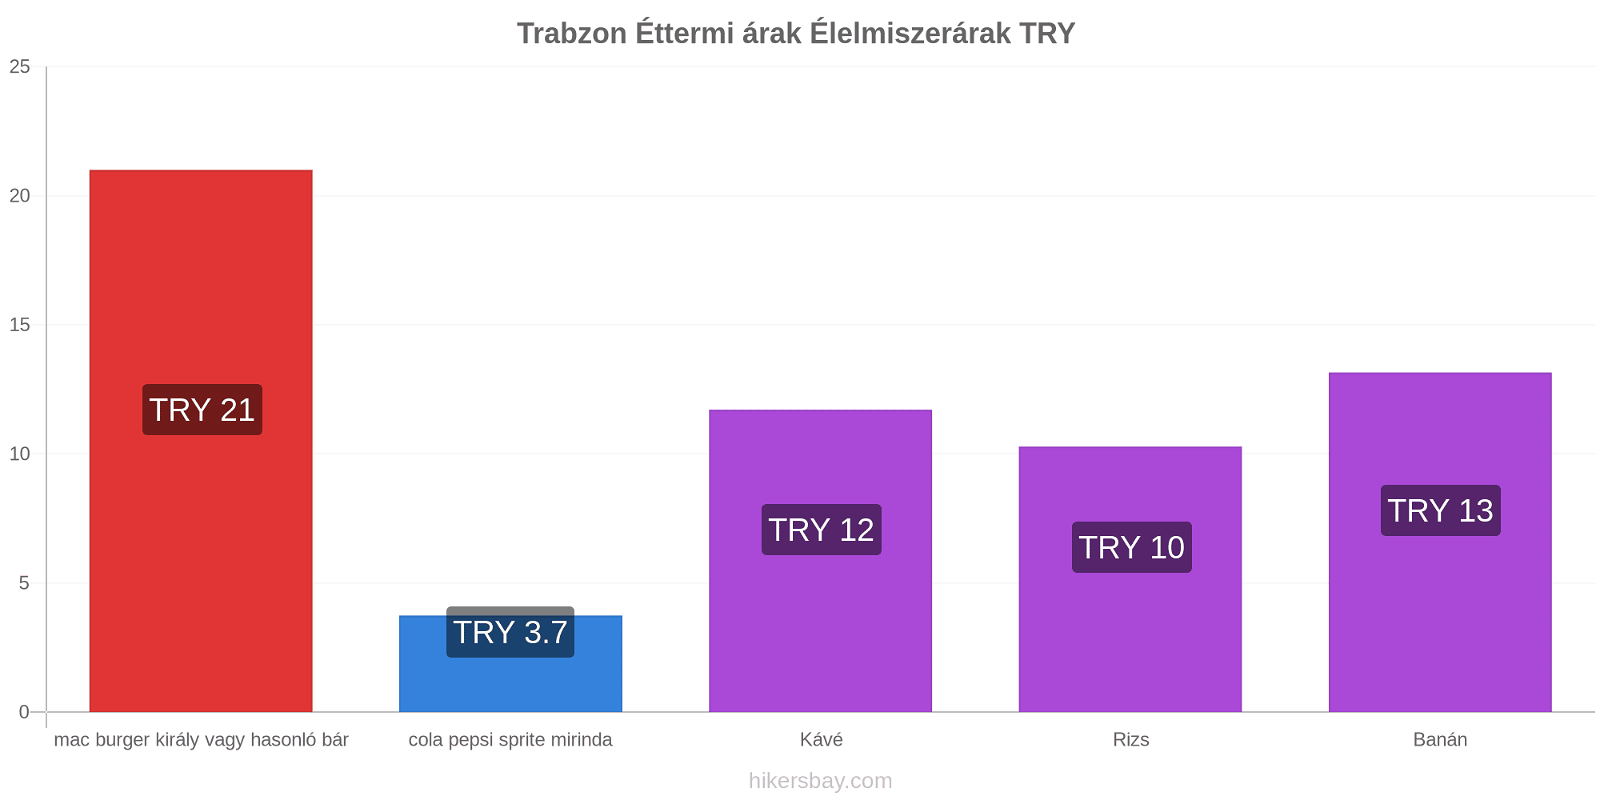 Trabzon ár változások hikersbay.com